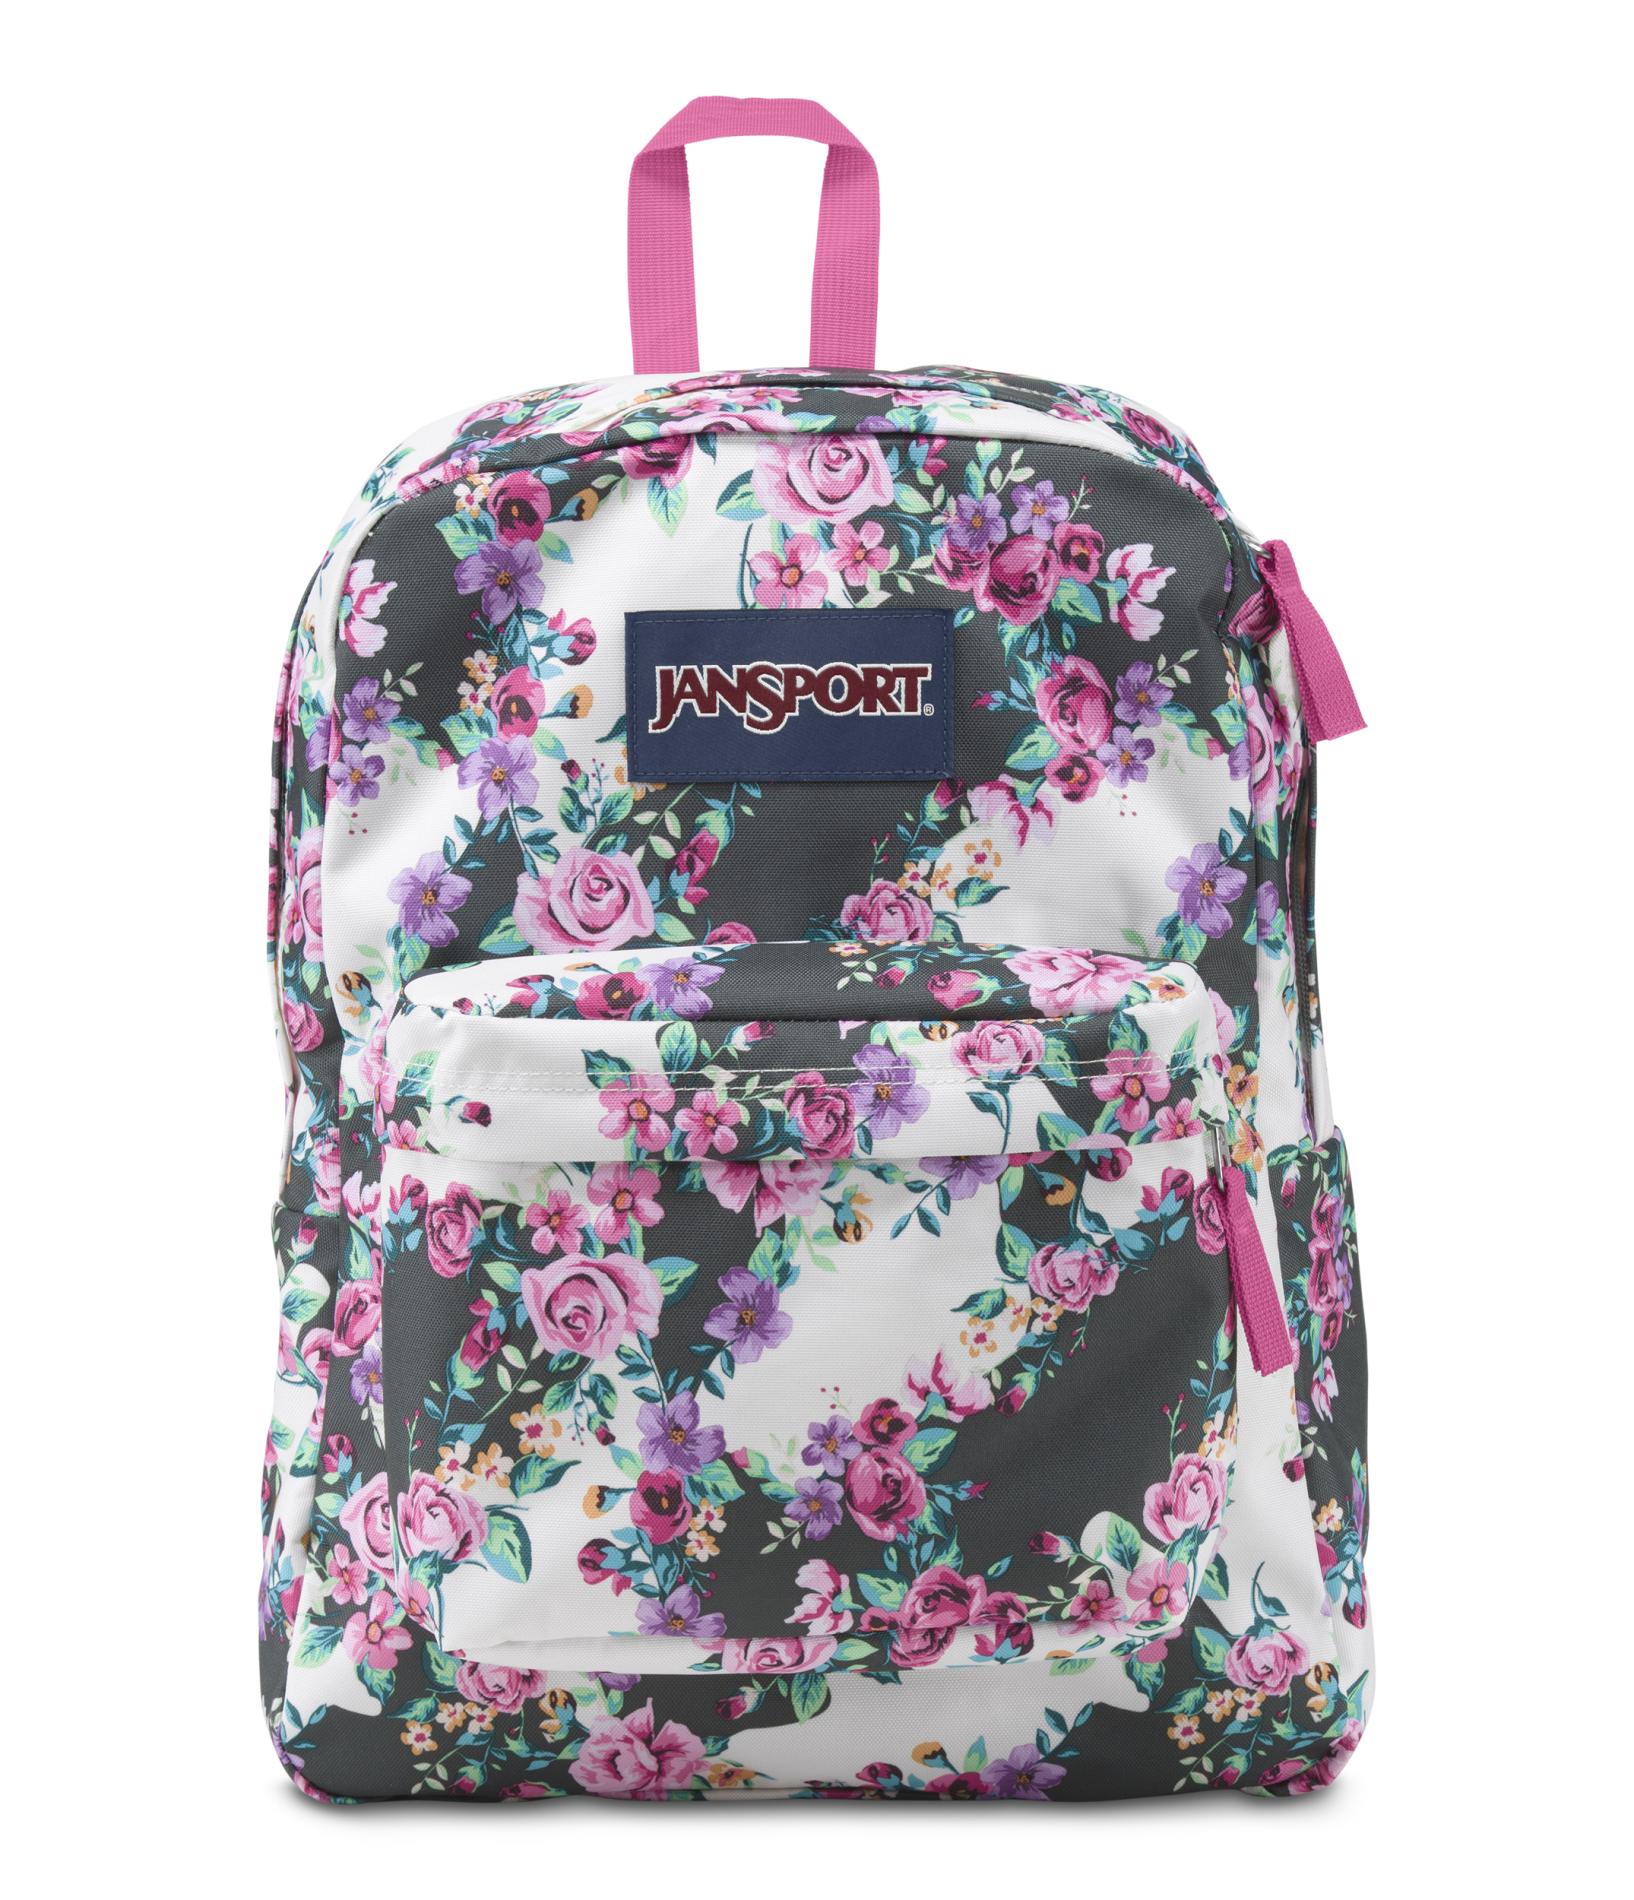 Jansport Backpack Floral lMjNTor0